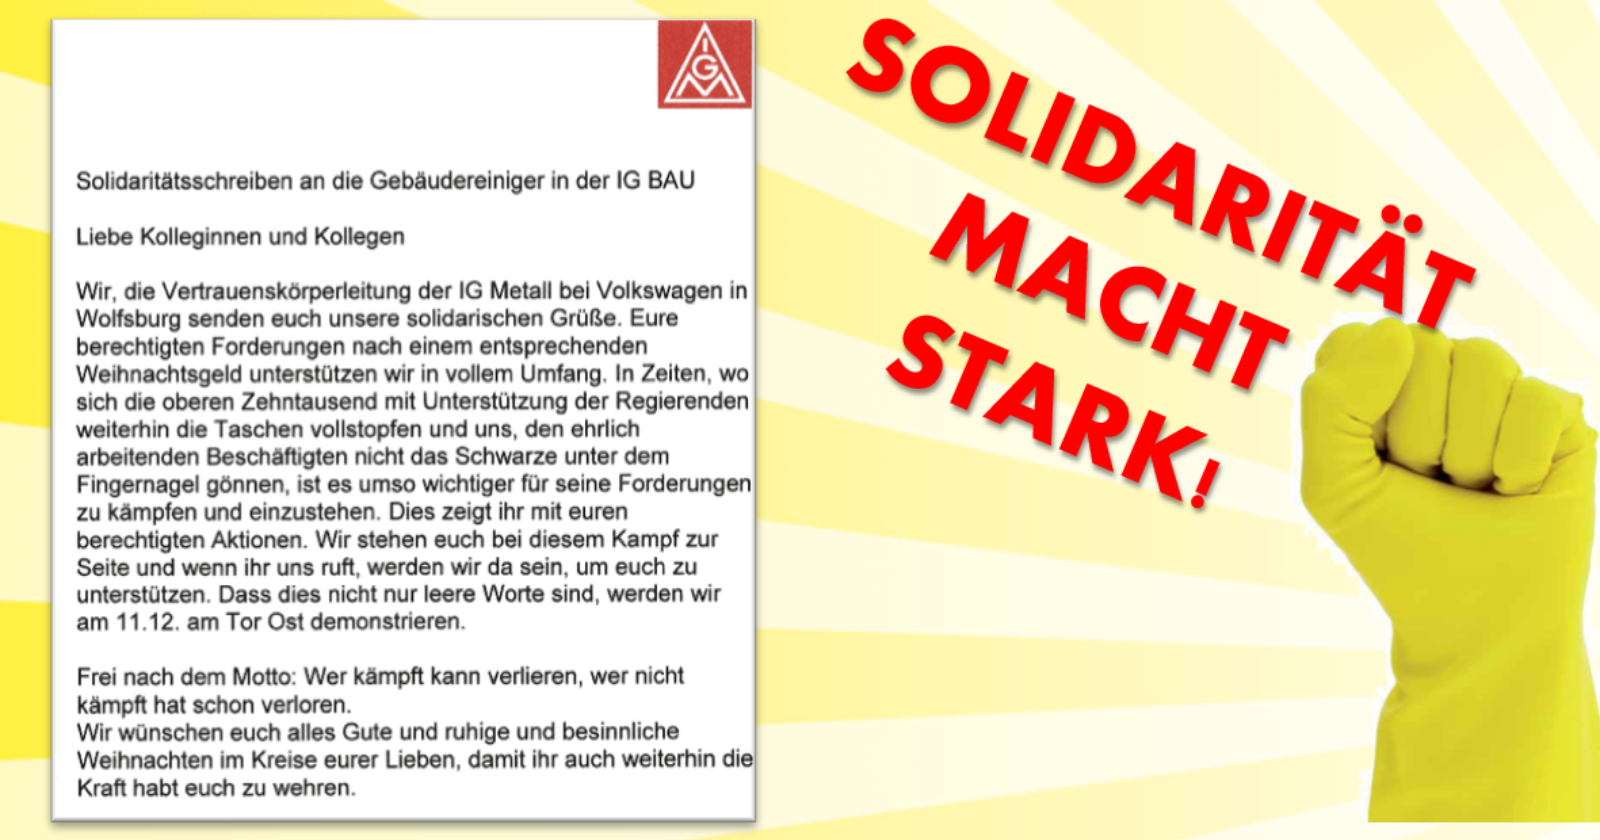 IG Metall-Vertrauenskörperleitung bei Volkswagen in Wolfsburg steht solidarisch an der Seite der GebäudereinigerInnen